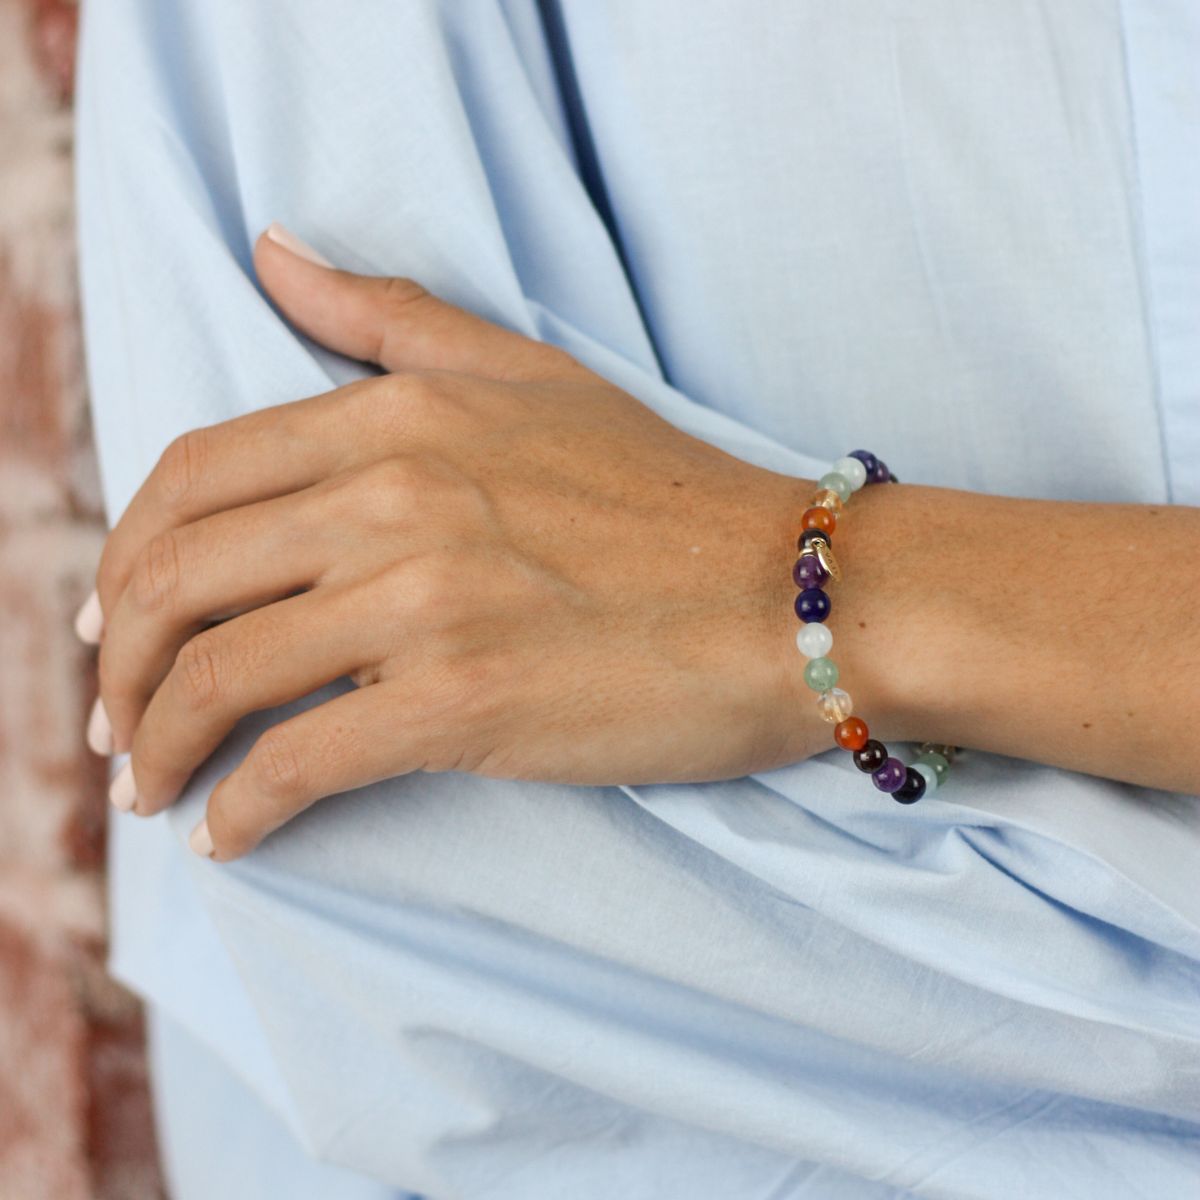 a woman wearing a bracelet on her wrist